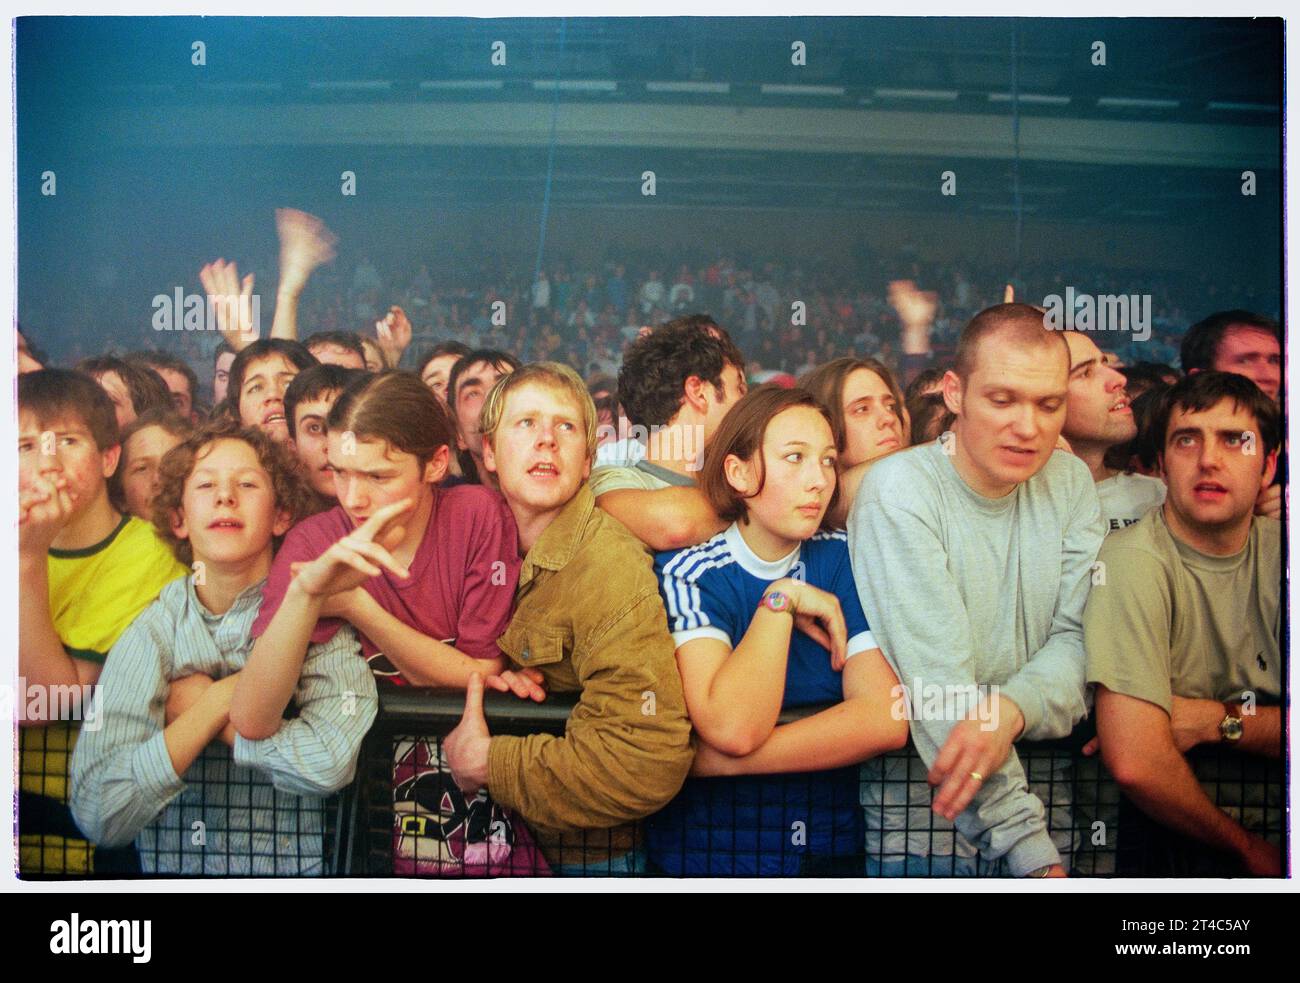 STONE ROSES, KONZERT-FANS, 1994: Die erste Reihe der Zuschauer, als die Stone Roses im Newport Centre in Newport, Wales, Großbritannien spielen, um ihr zweites Album am 4. Dezember 1994 zu unterstützen. Foto: Rob Watkins Stockfoto